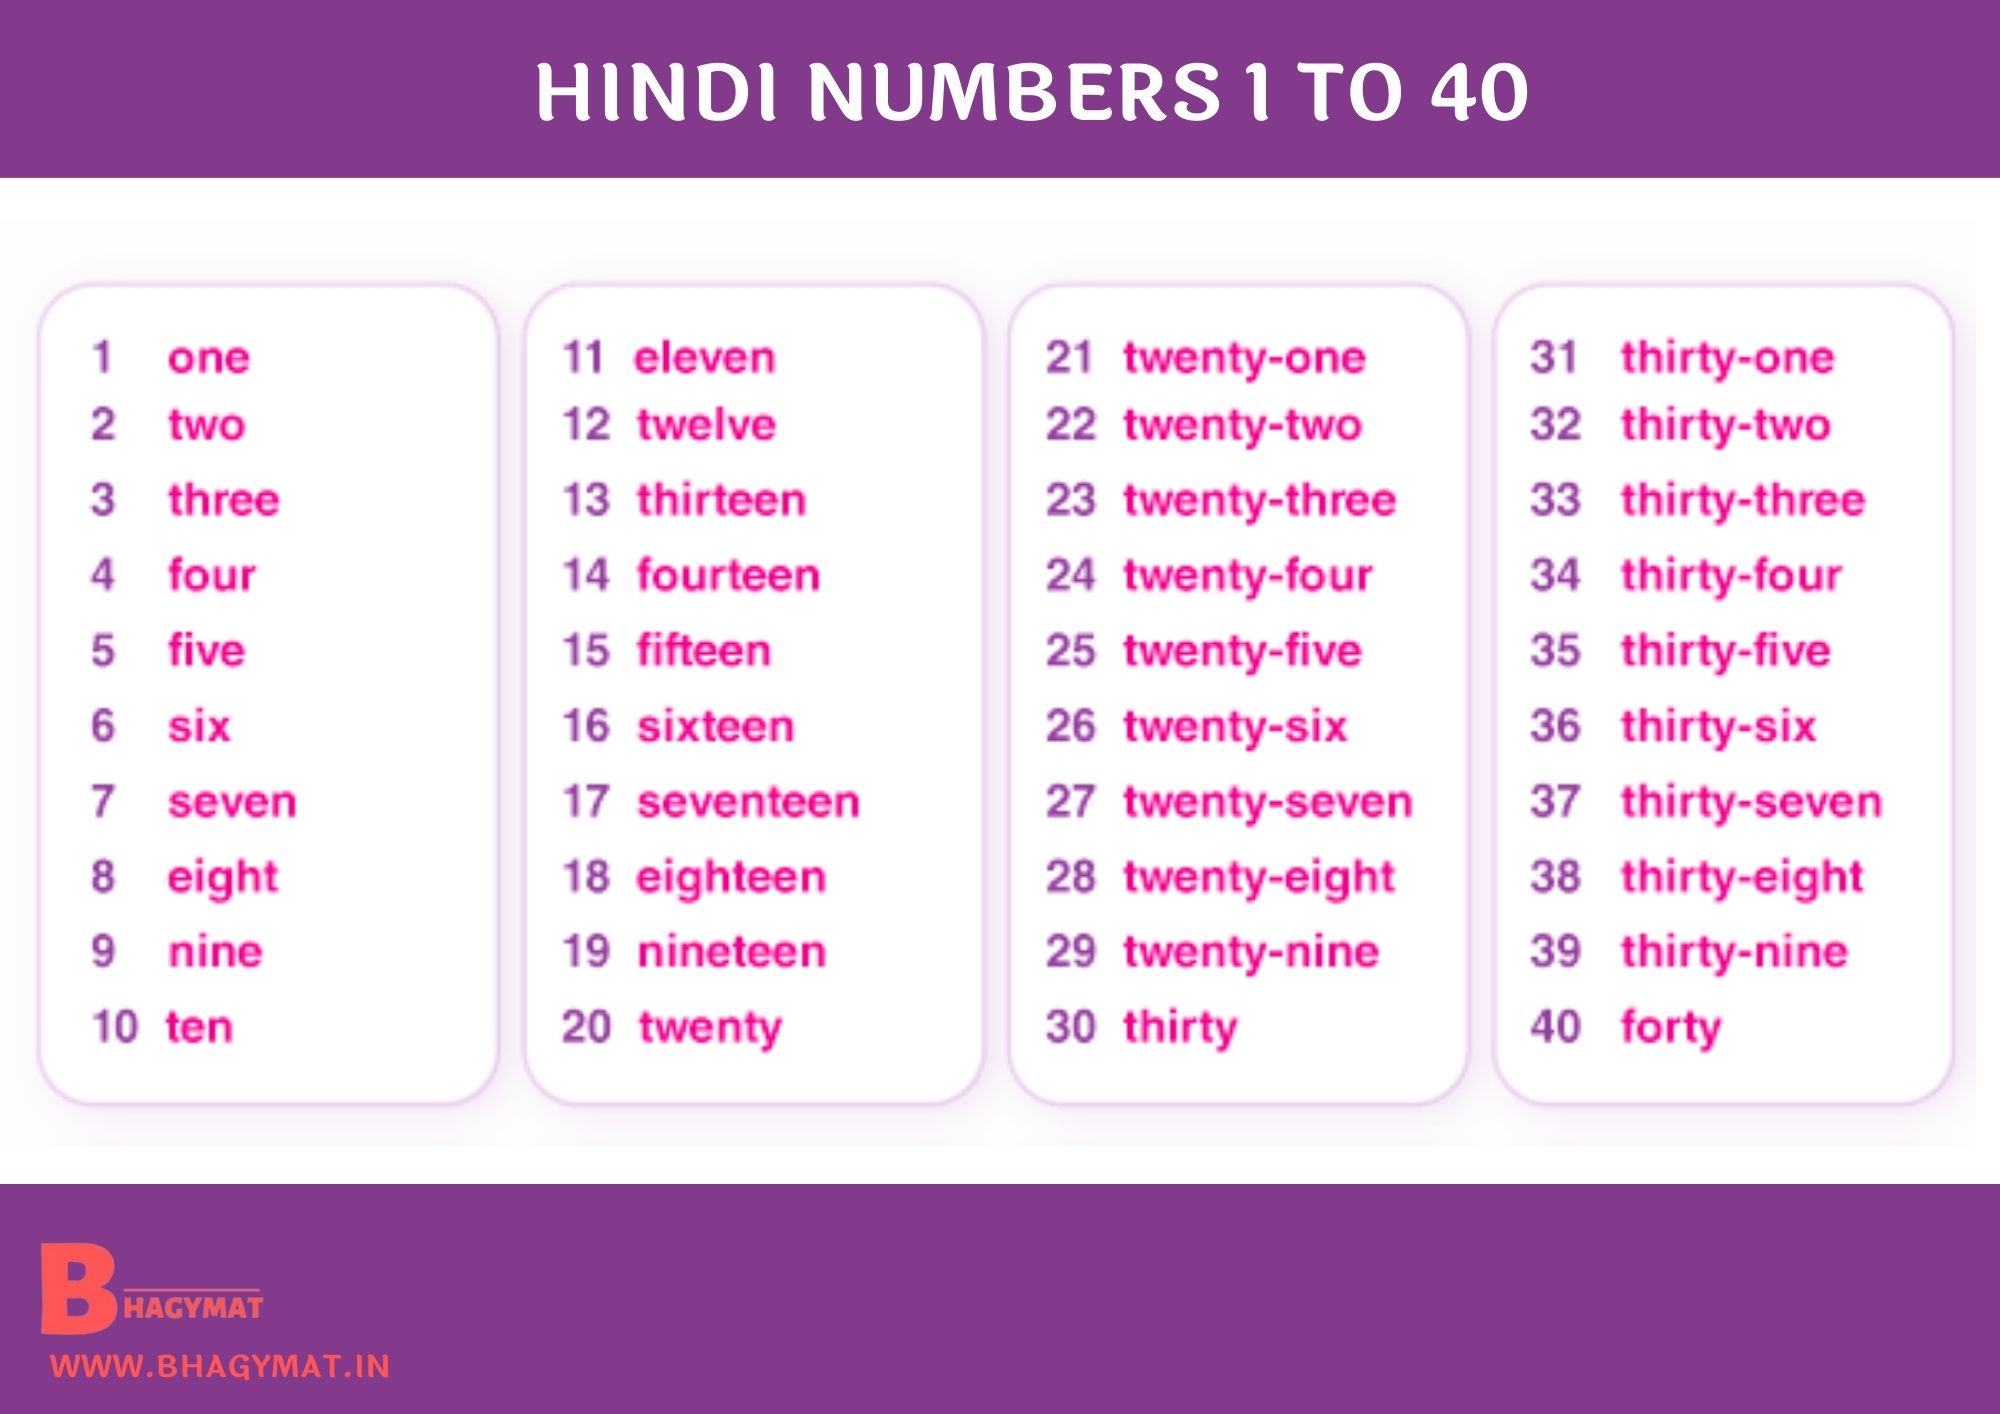 Hindi Numbers 1 To 40 | 1 To 40 Numbers In Hindi | Hindi Numbers 1-40 | Numbers Hindi 1 To 40 | 1 To 40 Hindi Numbers